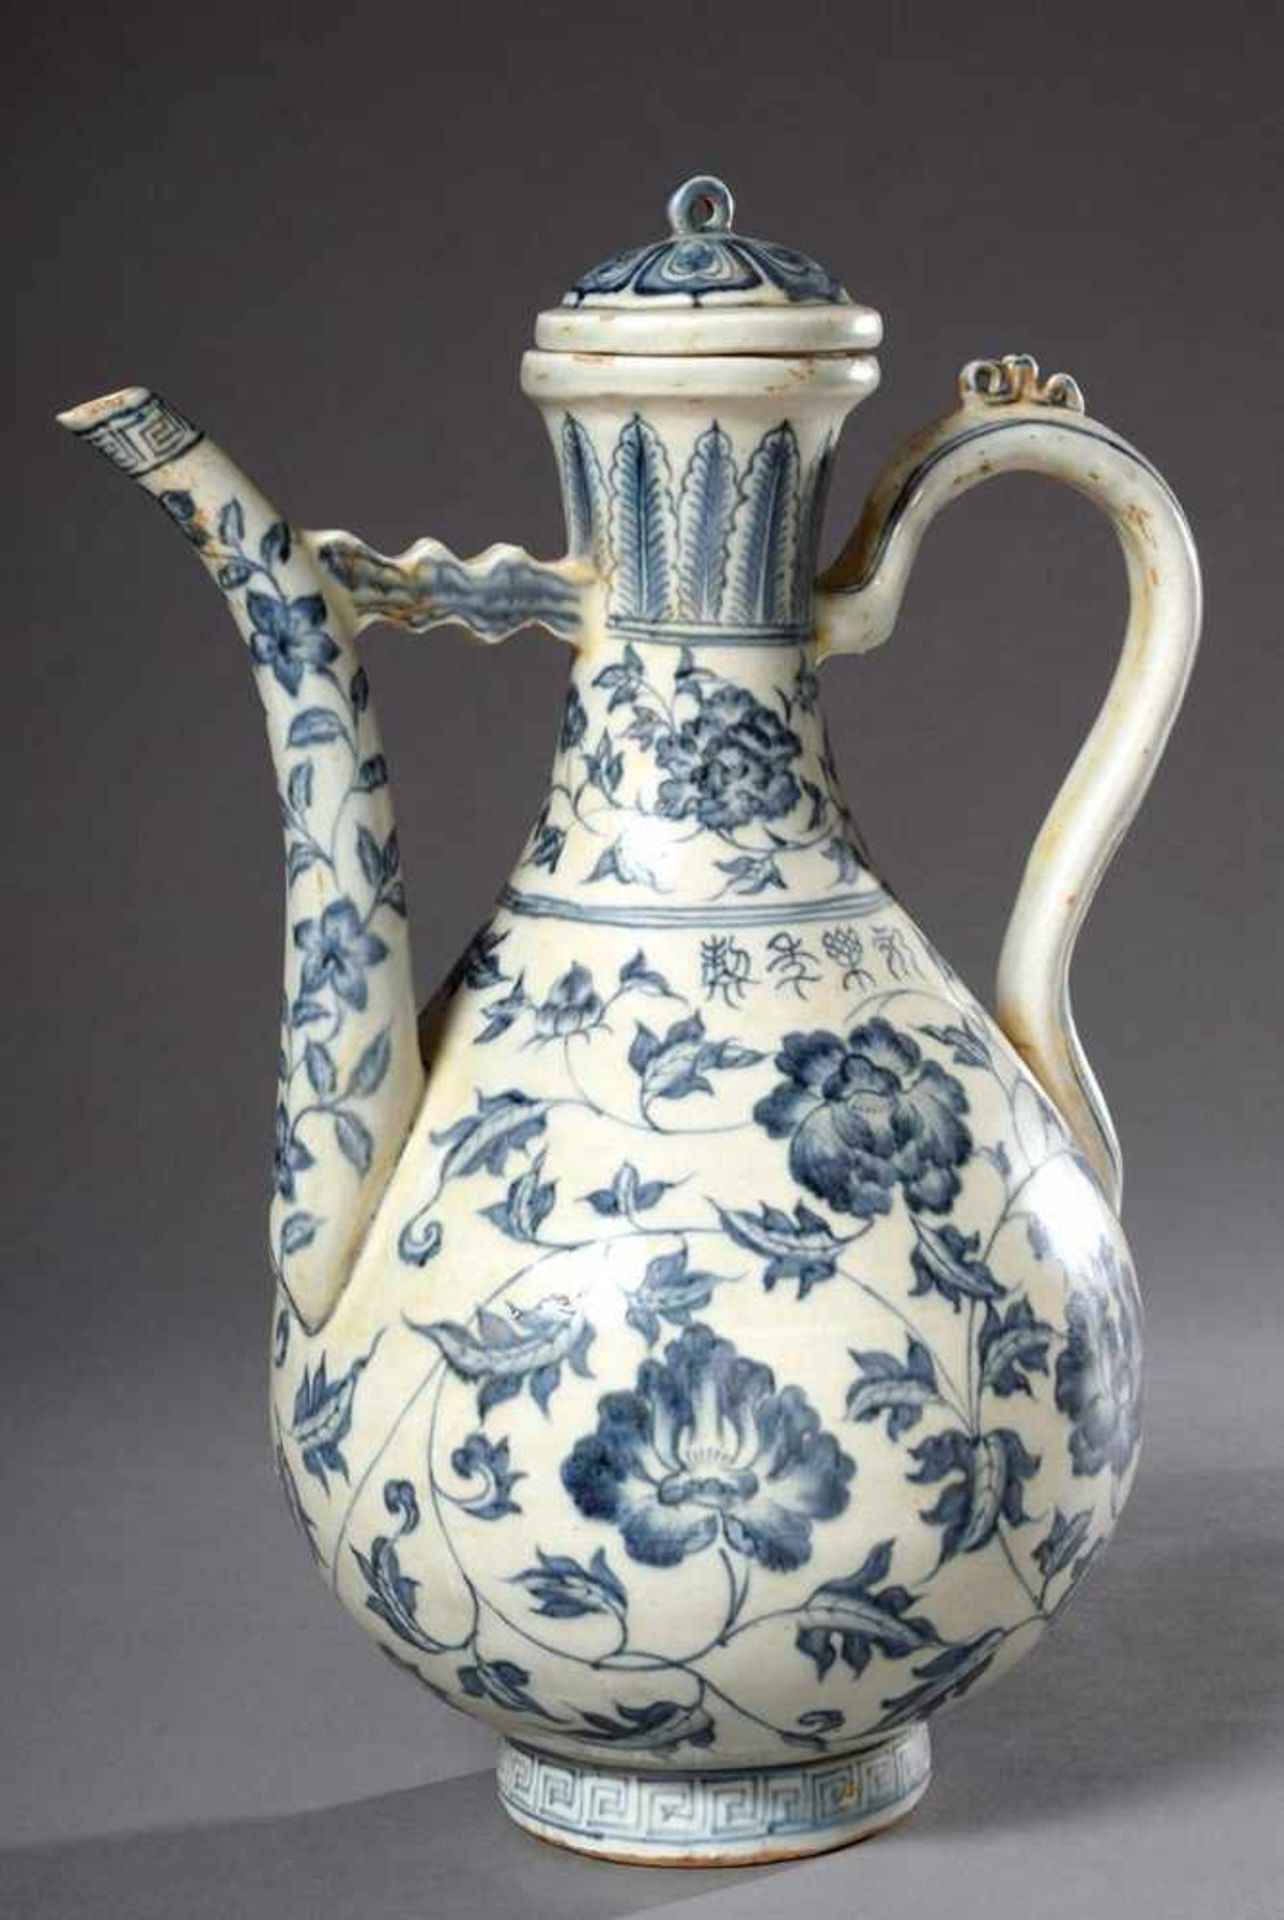 Chinesische Porzellan Kanne mit feinem Blaumalereidekor "Päonienzweige" sowie Schriftzeichen, im